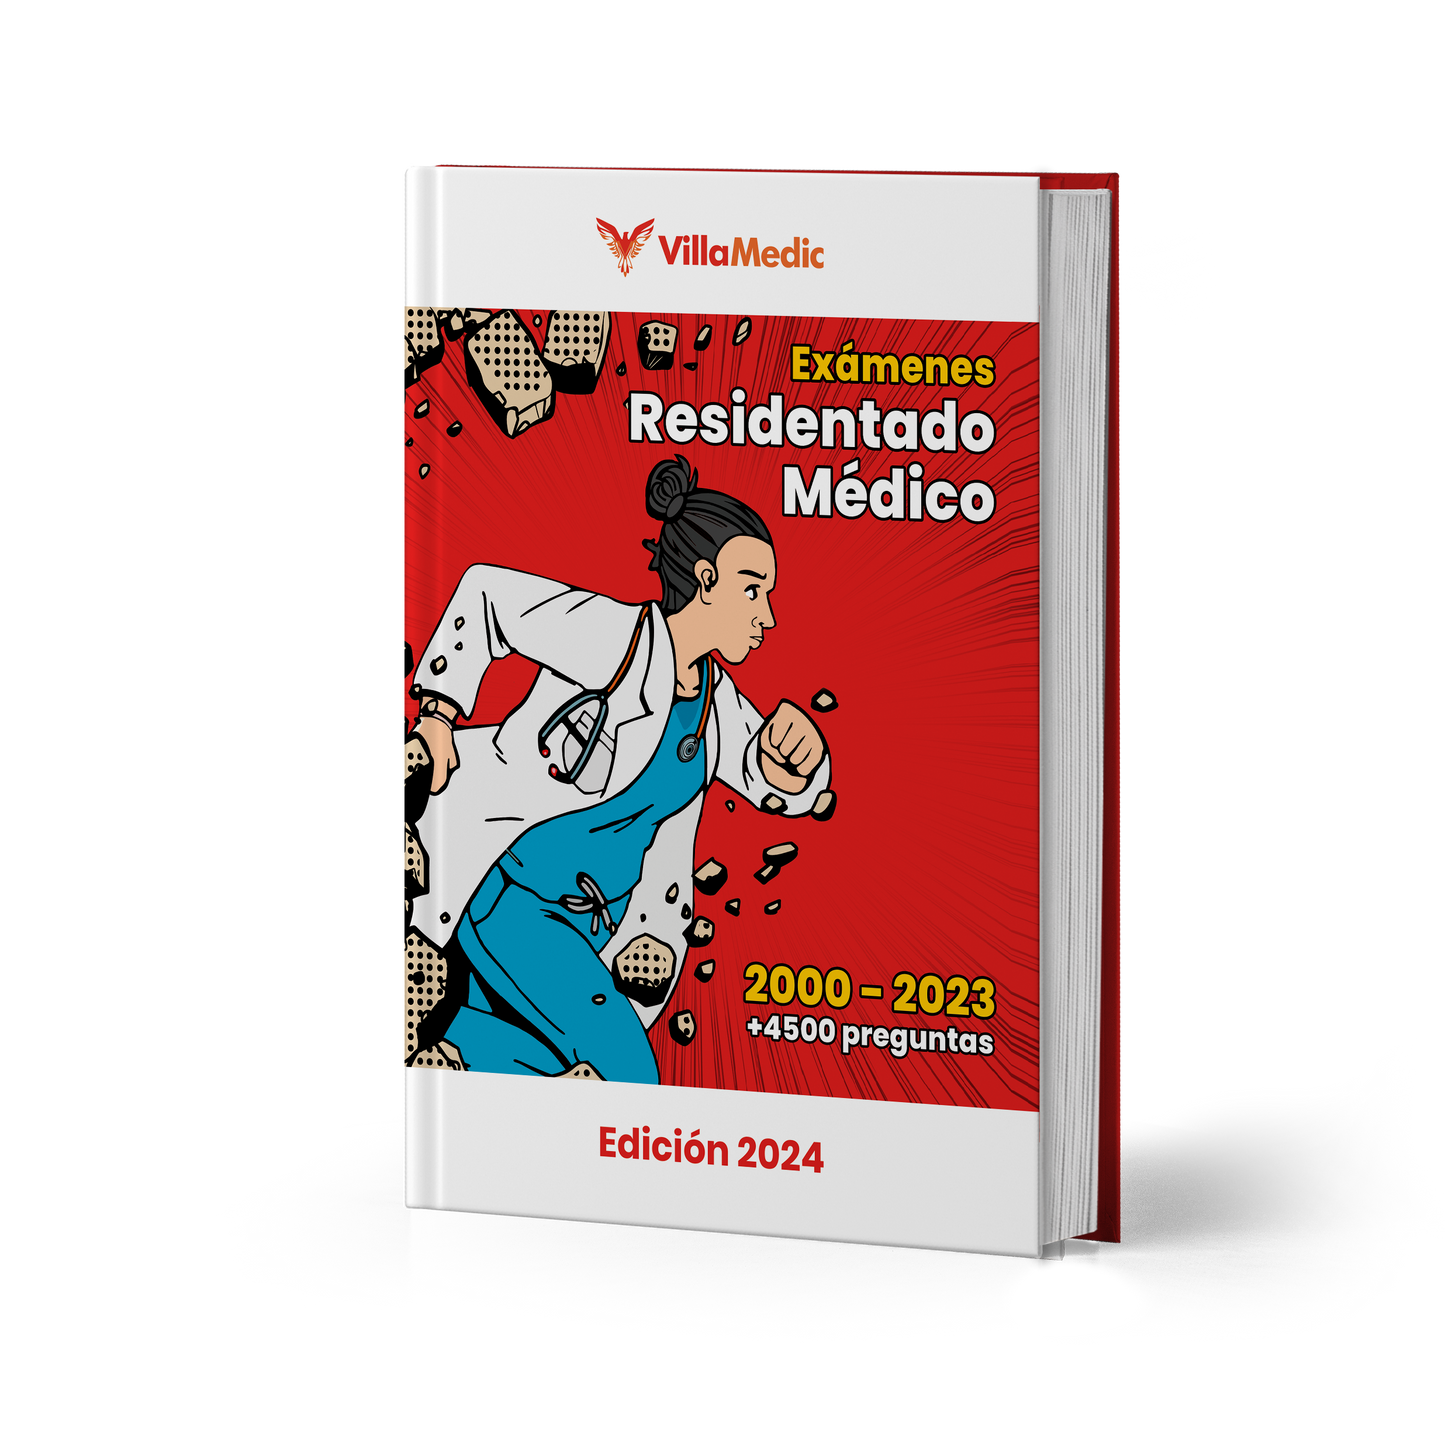 Exámenes Residentado Médico (2000 - 2023) Edición 2024